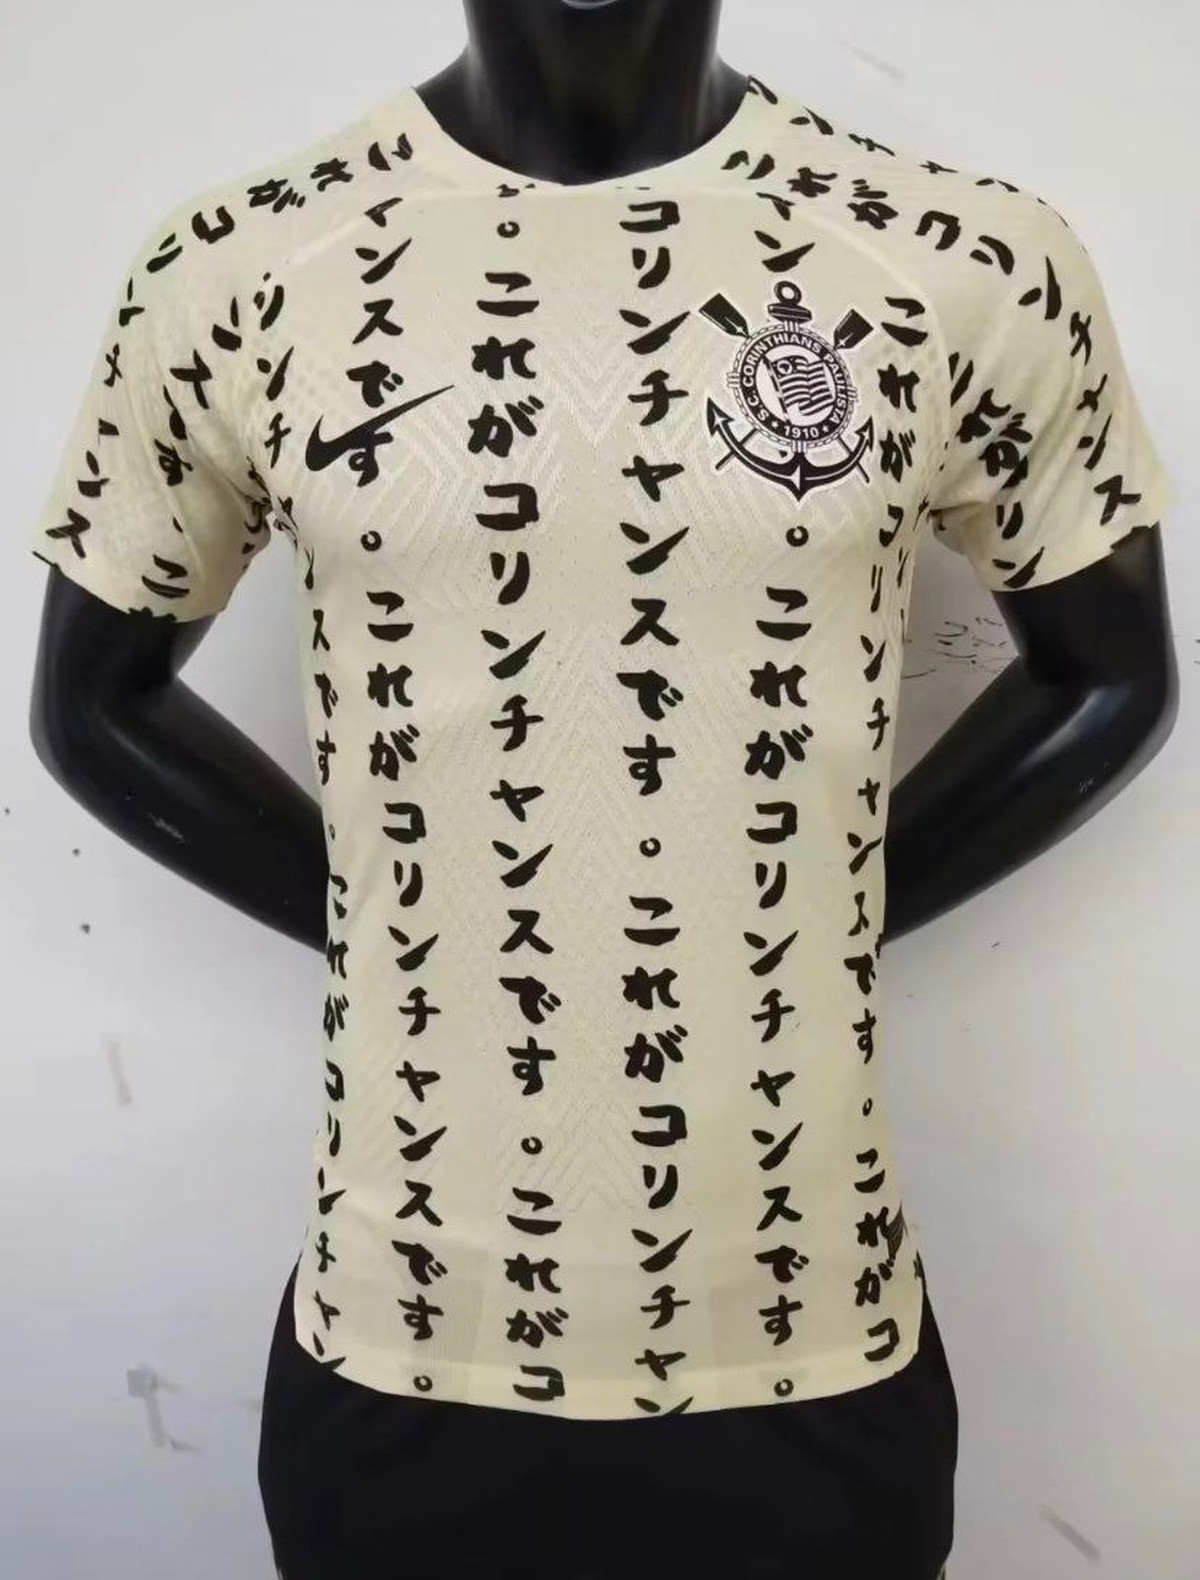 Entenda o que está escrito na nova camisa do Corinthians em homenagem